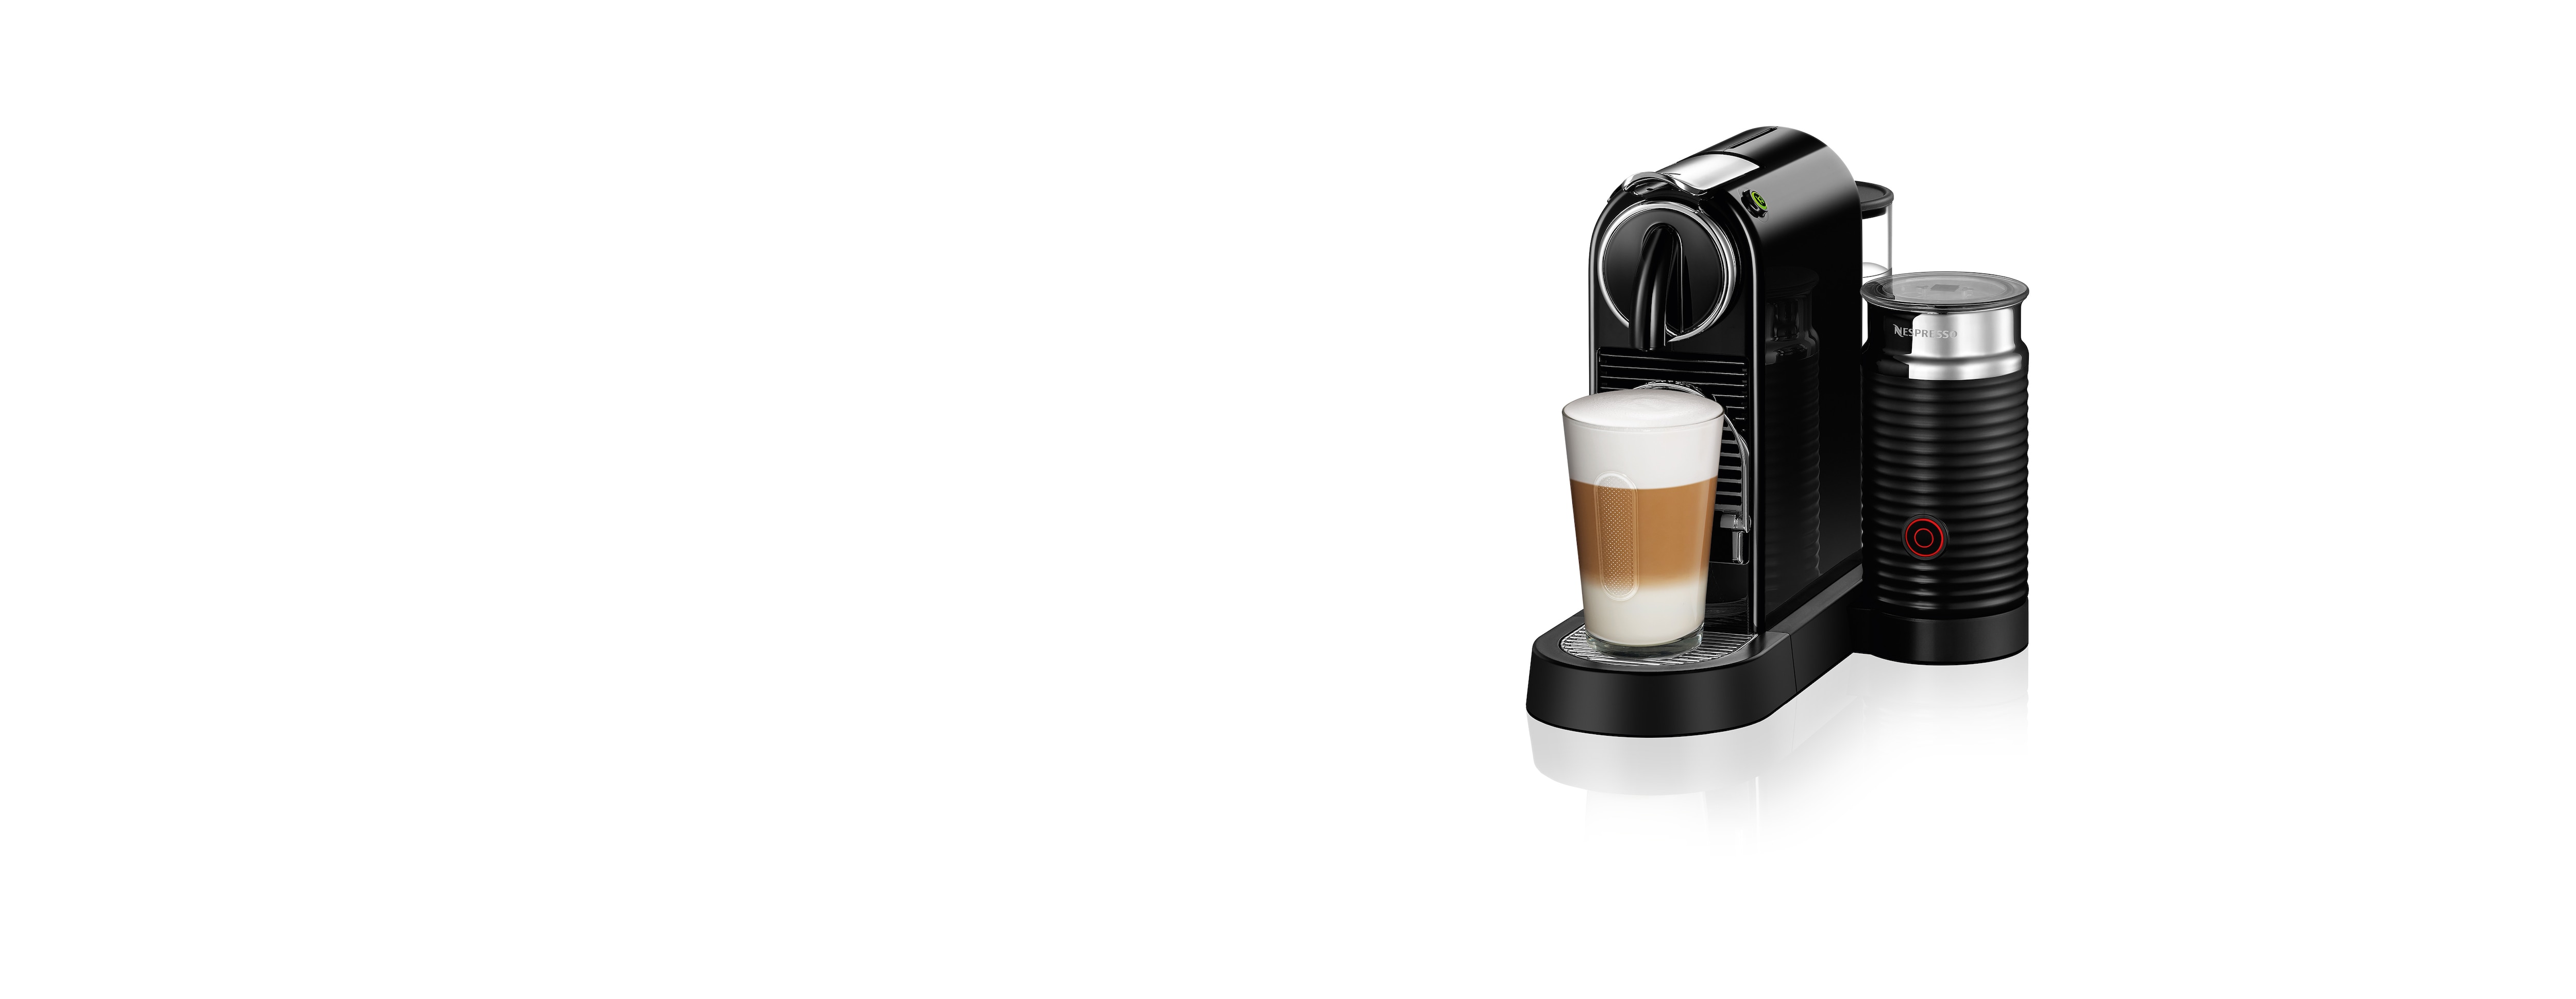 Nespresso M195 citiz & milk 1 L Noir 11317 Magimix 